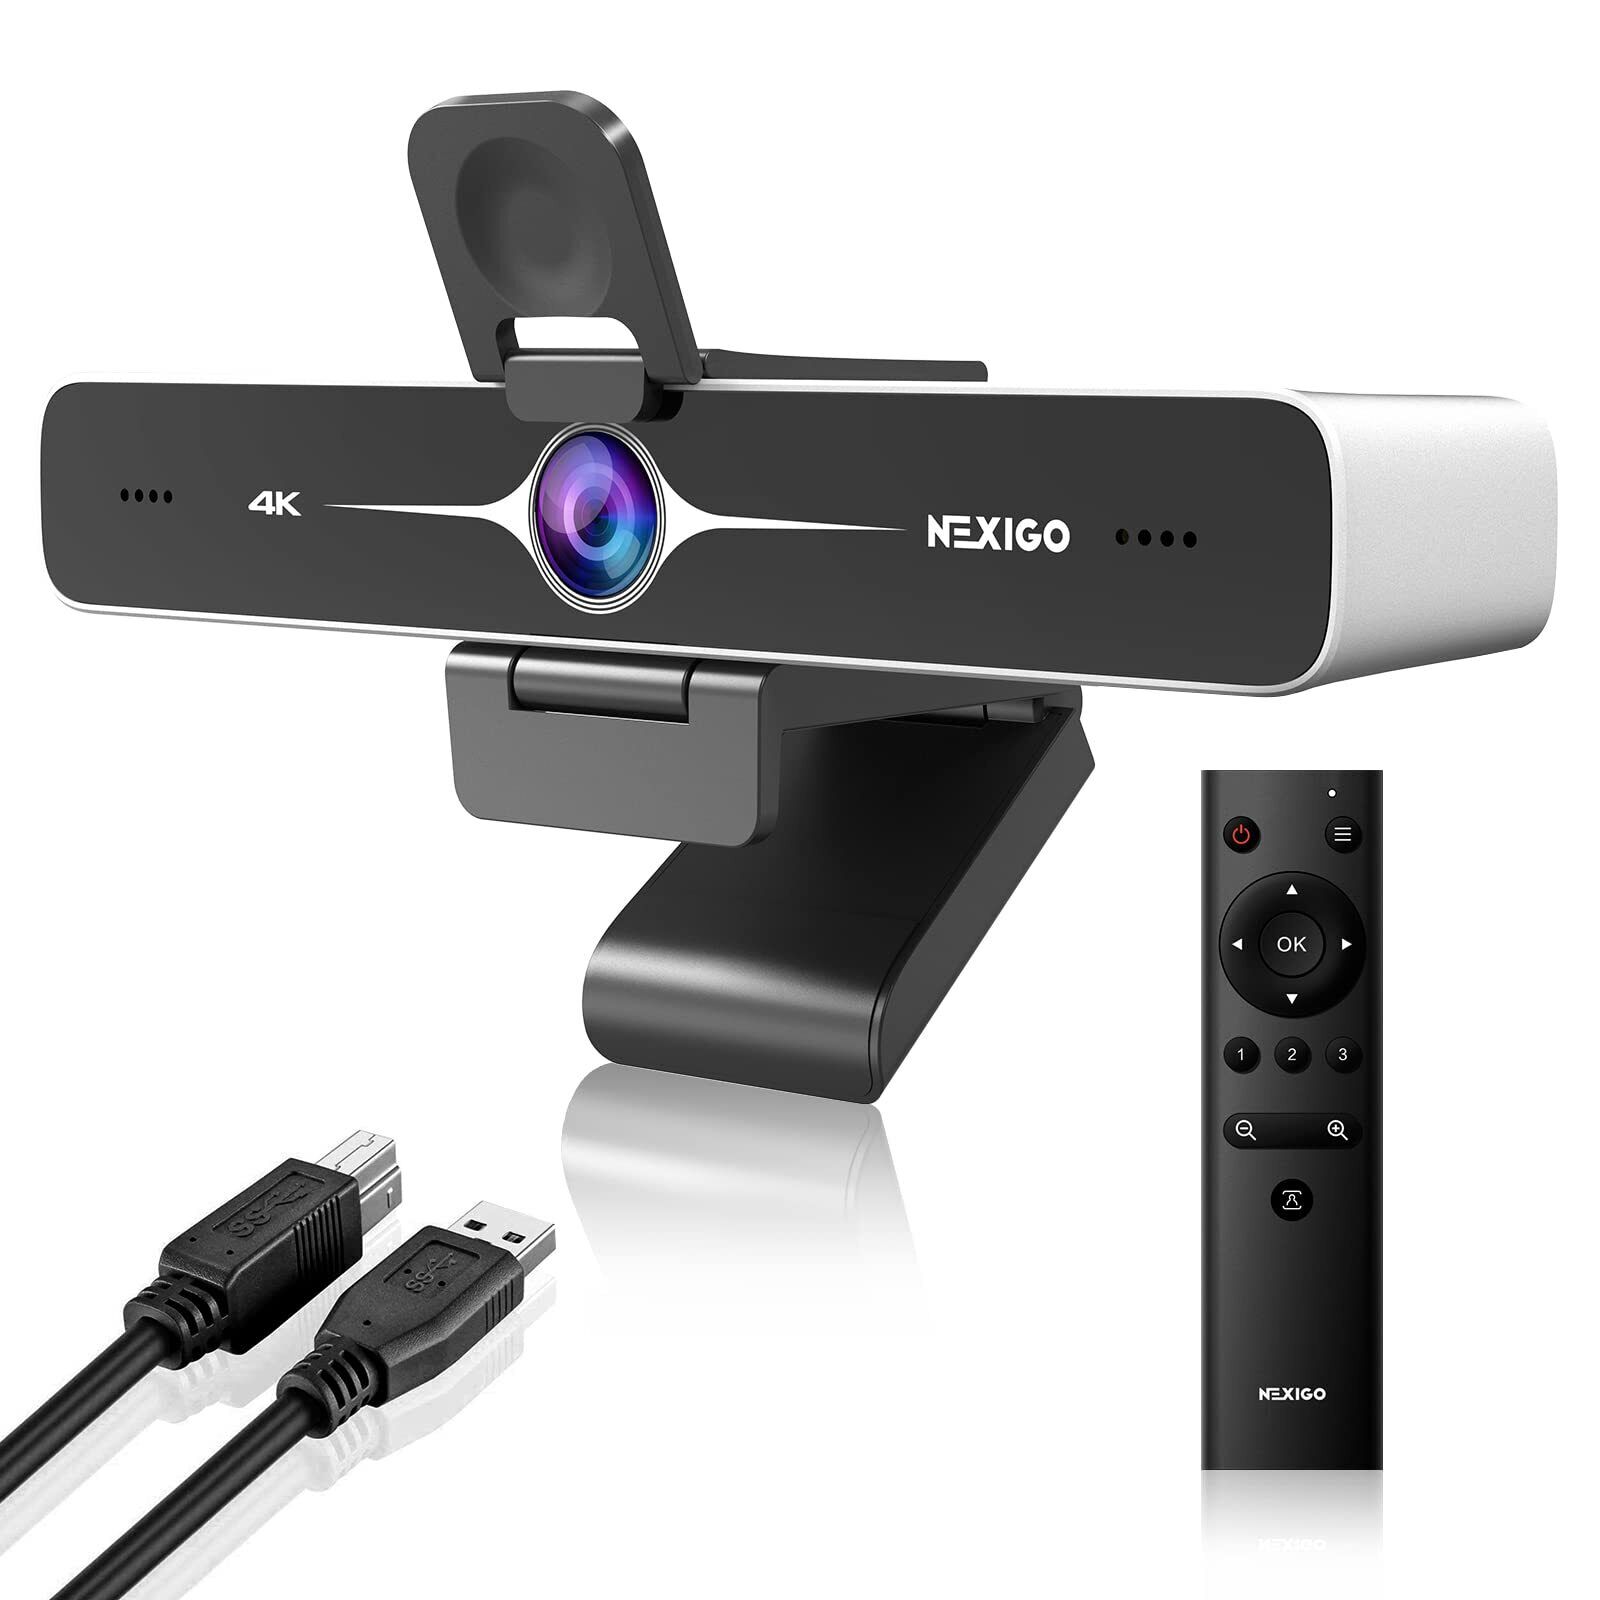 NexiGo Zoom Certified, N970P 4K Webcam Onboard Flash Memory Al-Powered